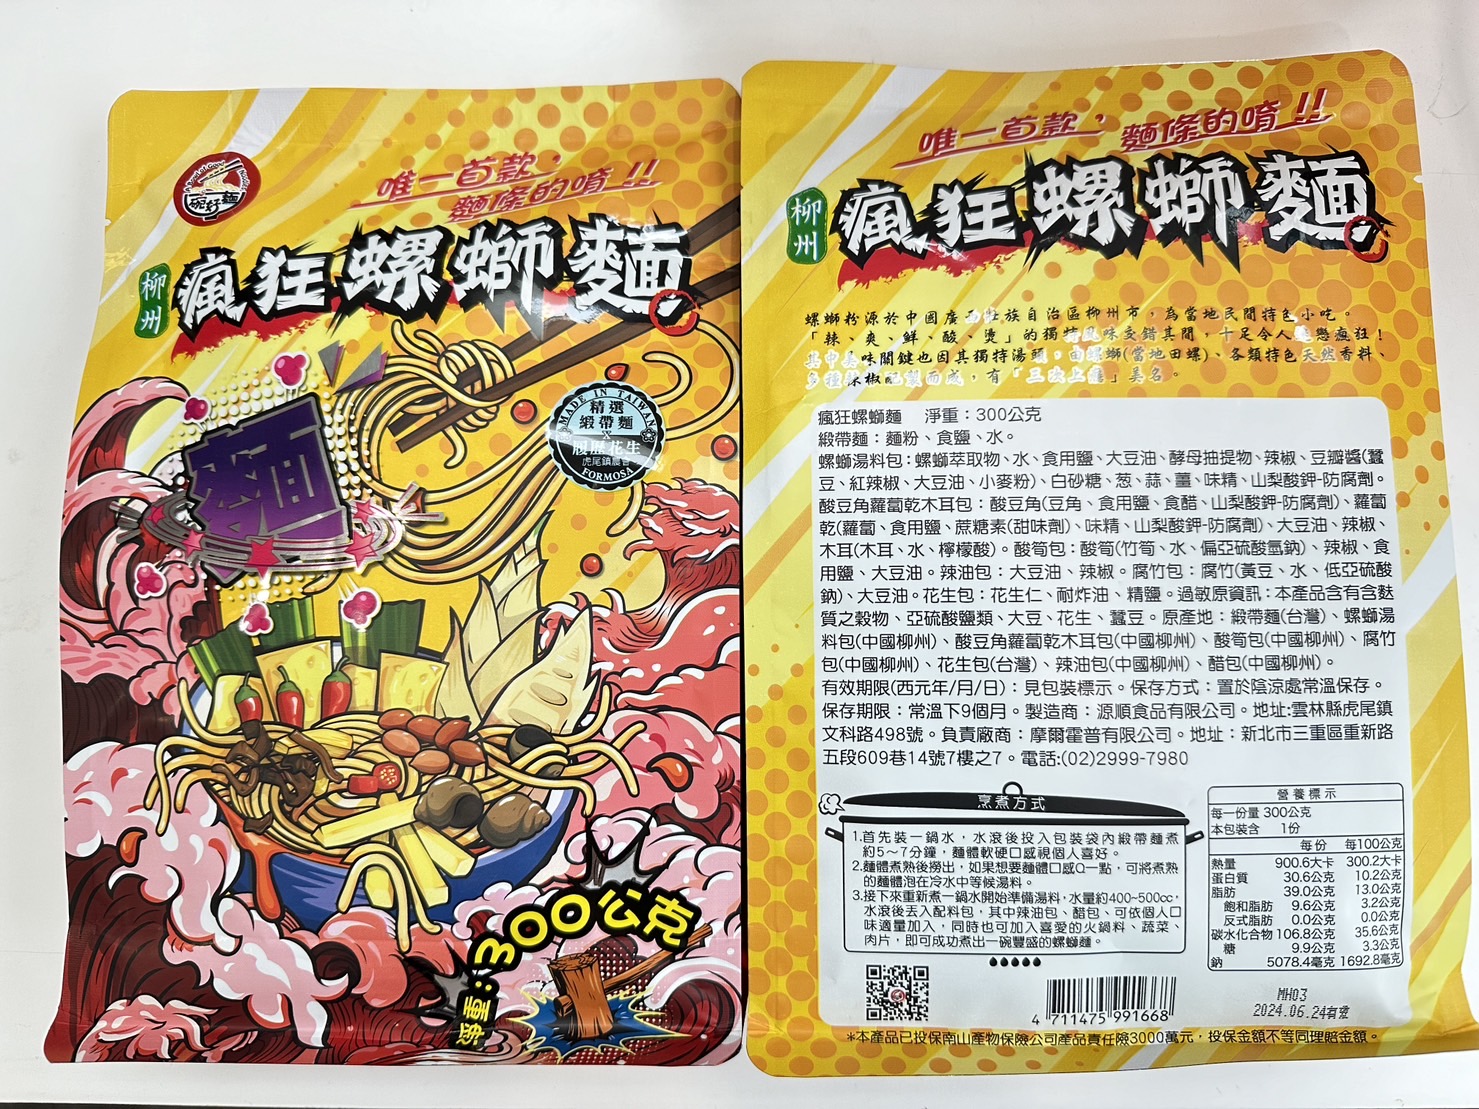 【一碗好麵】柳州瘋狂螺螄粉系列 5種口味任選 台灣加工檢驗合格